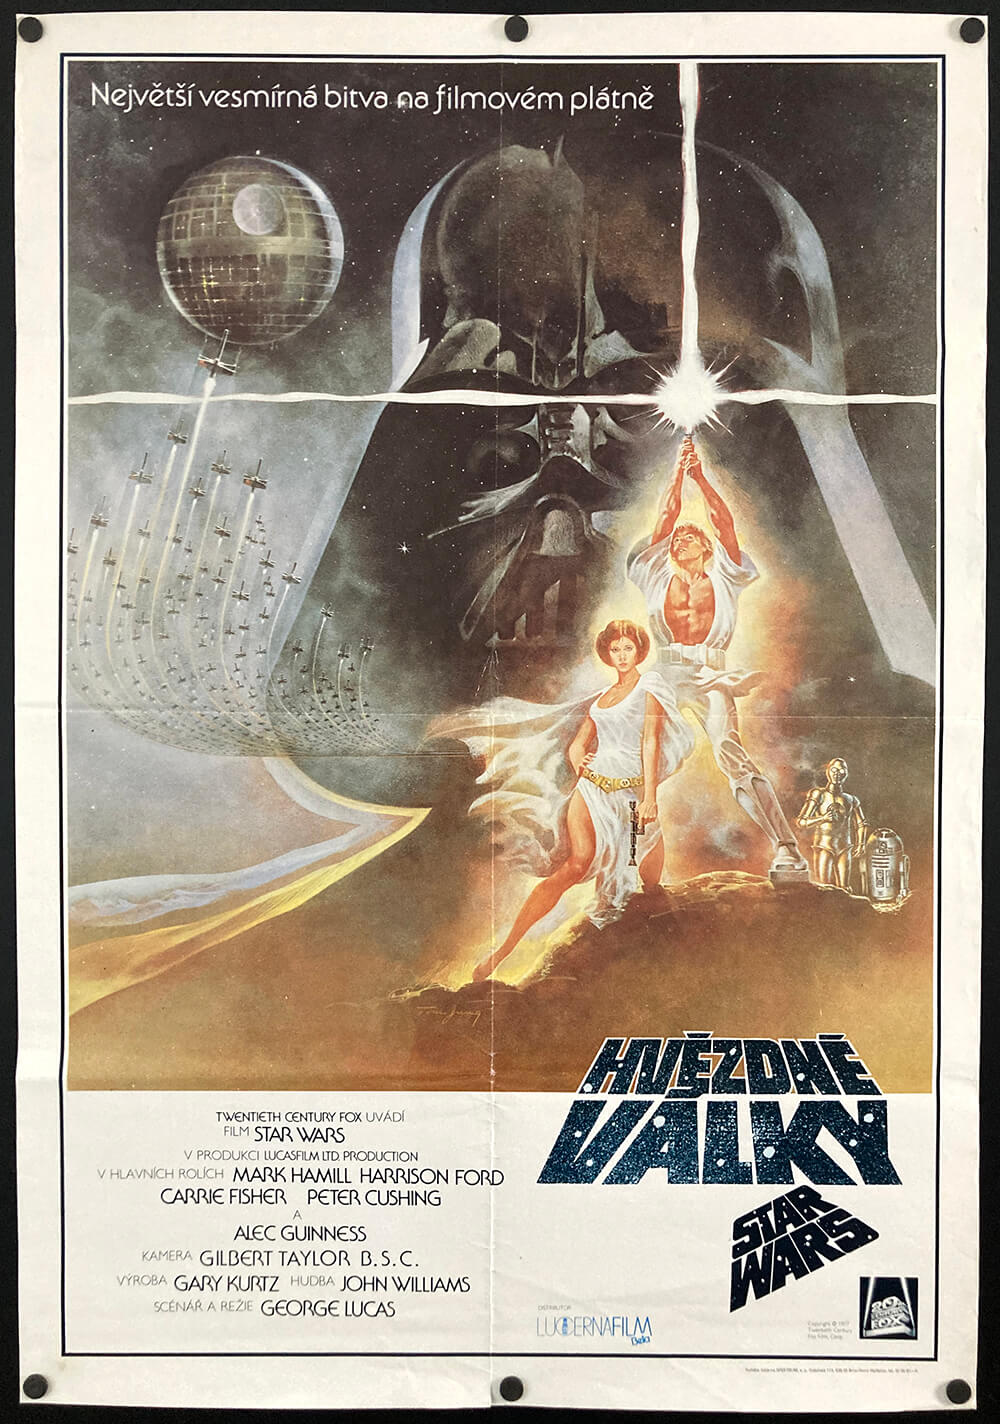 Star Wars: Episode IV A New Hope | Original Czech Poster – Czech Film Poster Gallery